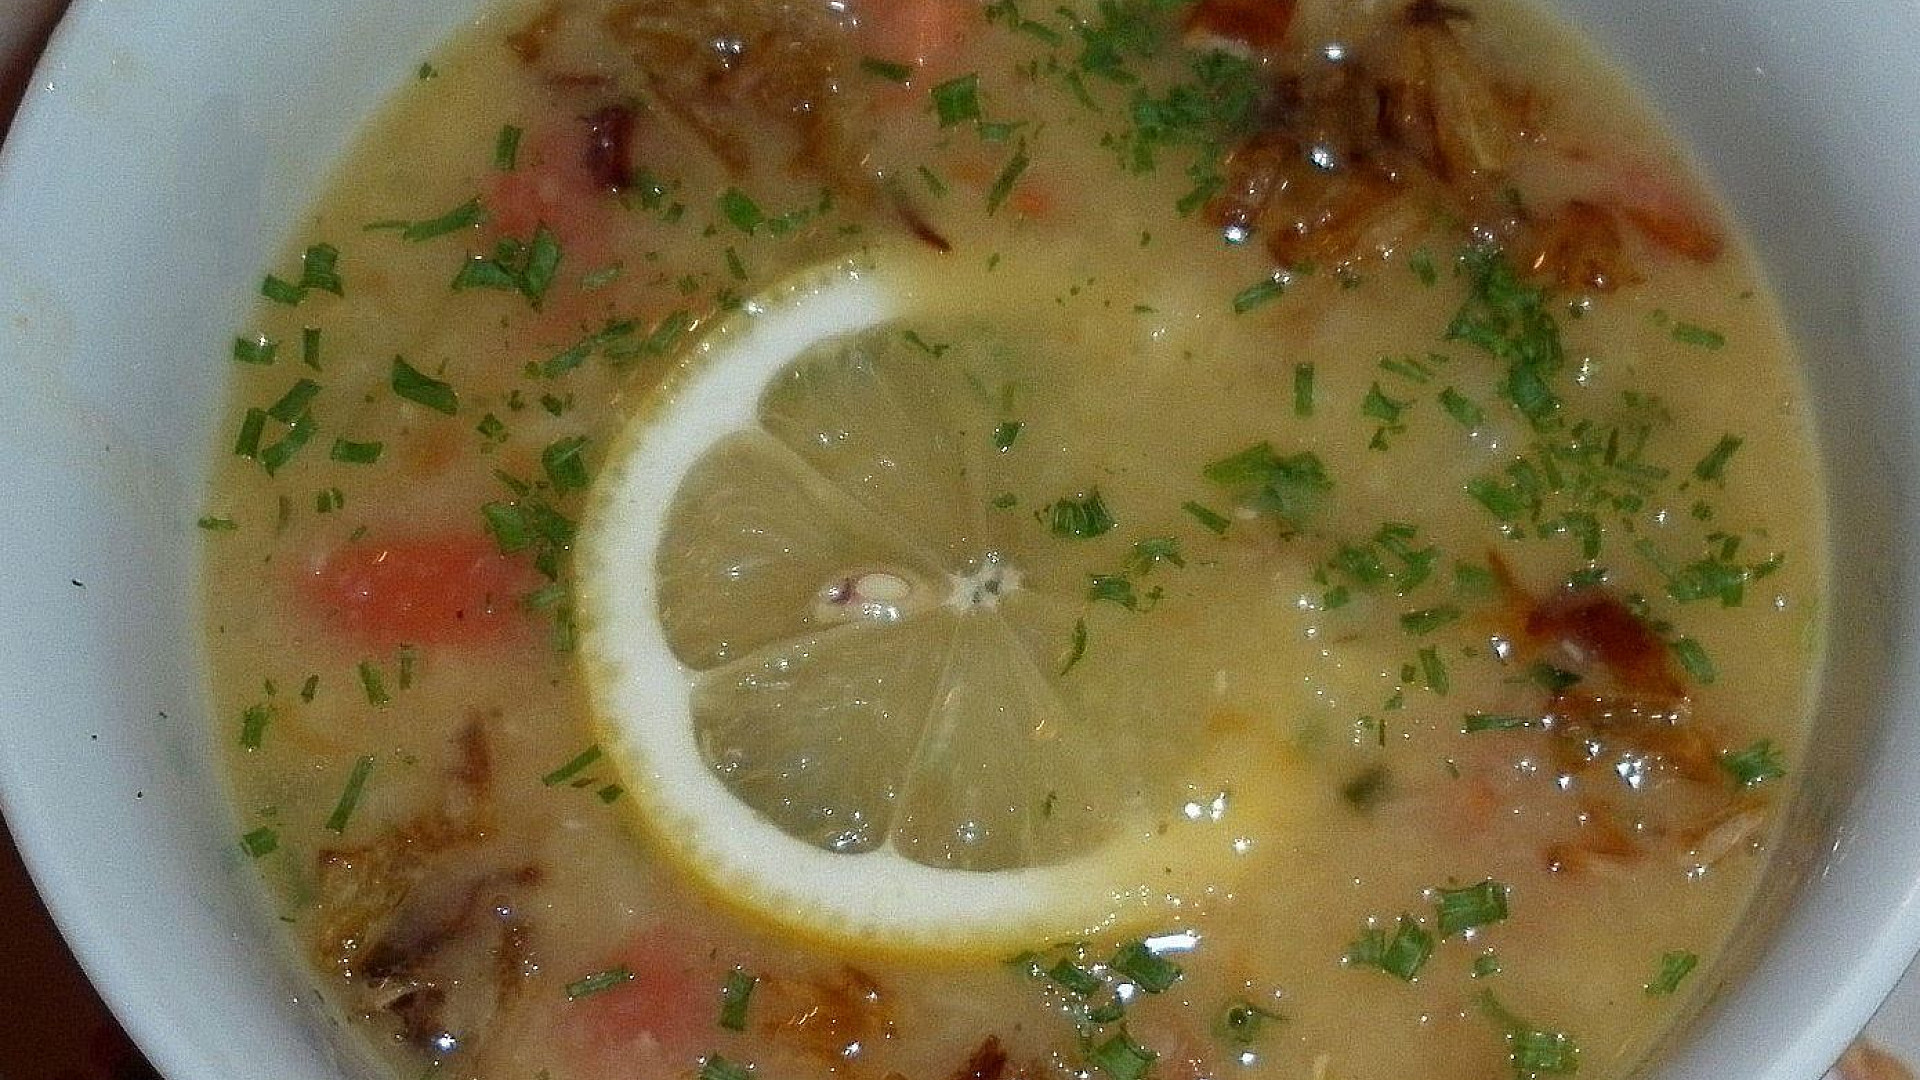 Egyptská čočková polévka Shurit